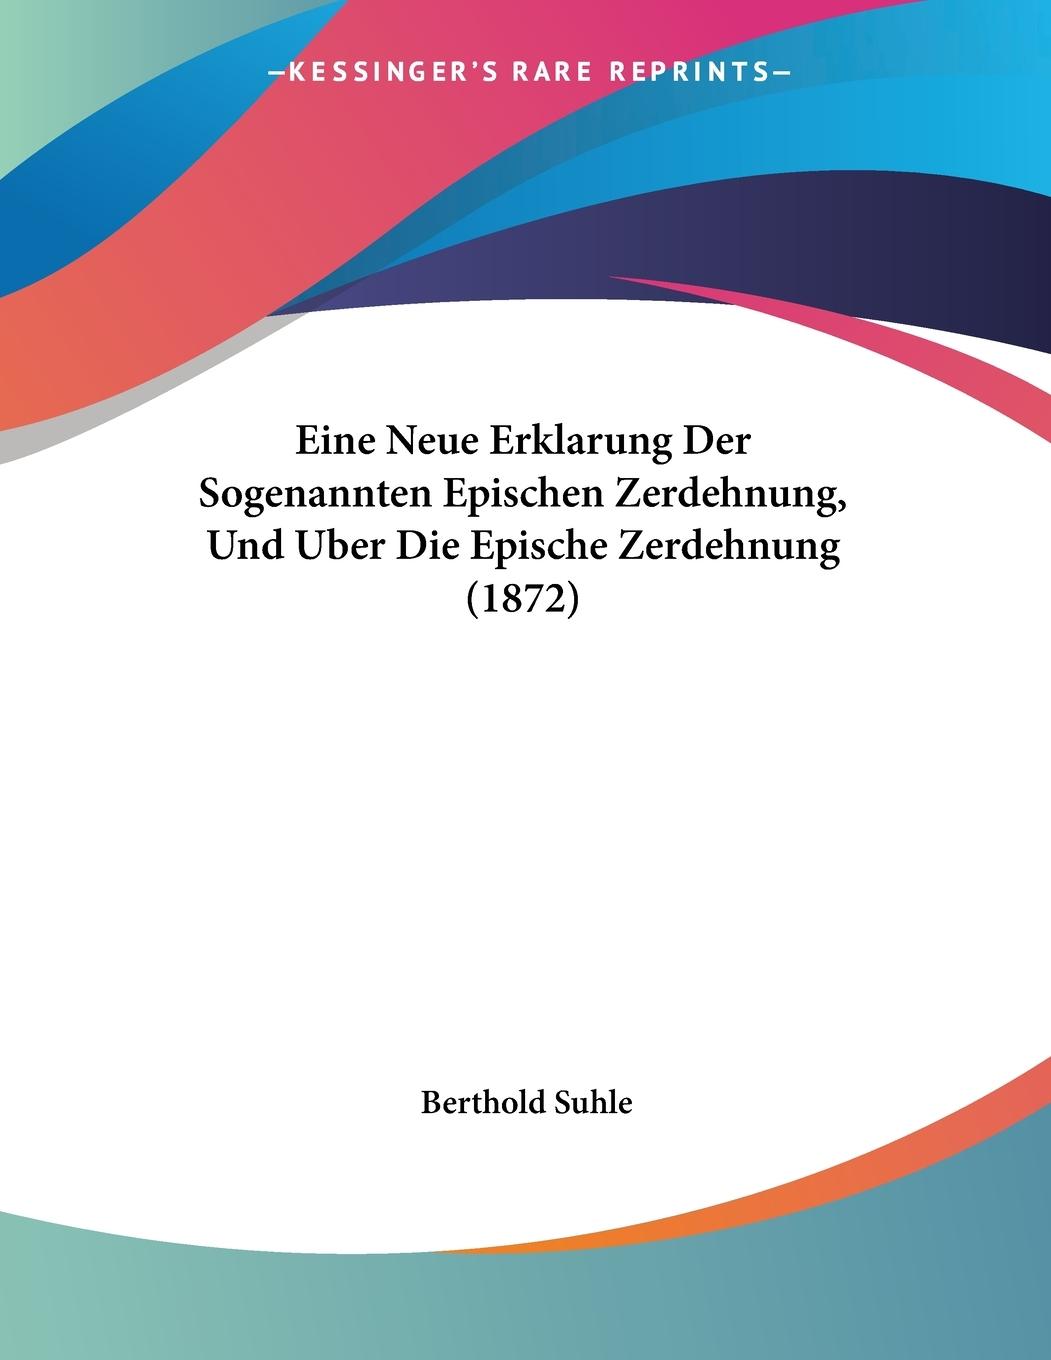 Eine Neue Erklarung Der Sogenannten Epischen Zerdehnung, Und Uber Die Epische Zerdehnung (1872) - Suhle, Berthold